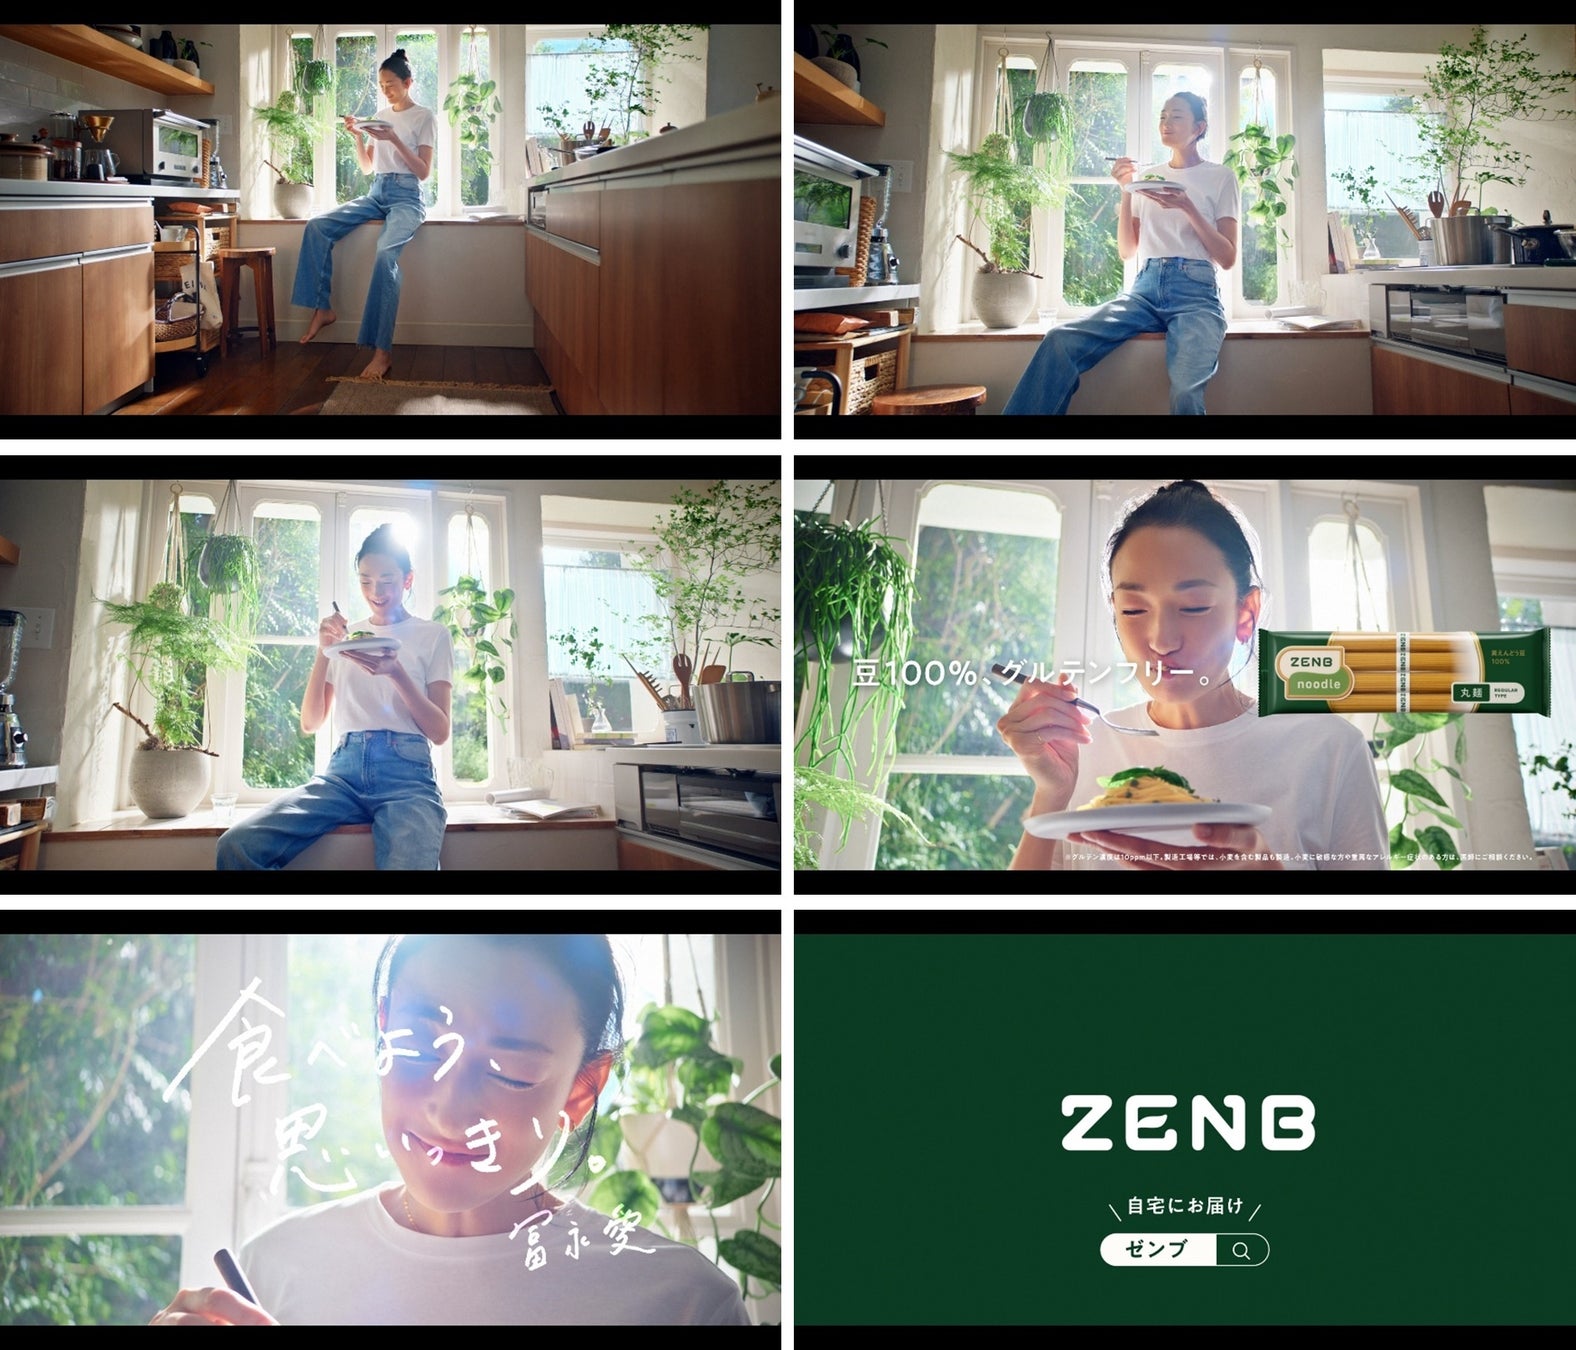 ZENBを愛用するスーパーモデル・冨永愛さんが、パクパクと食べる姿が印象的！ ZENB初のTVCM『食べよう、思いっきり。』篇を9月22日（金）から公開のサブ画像1